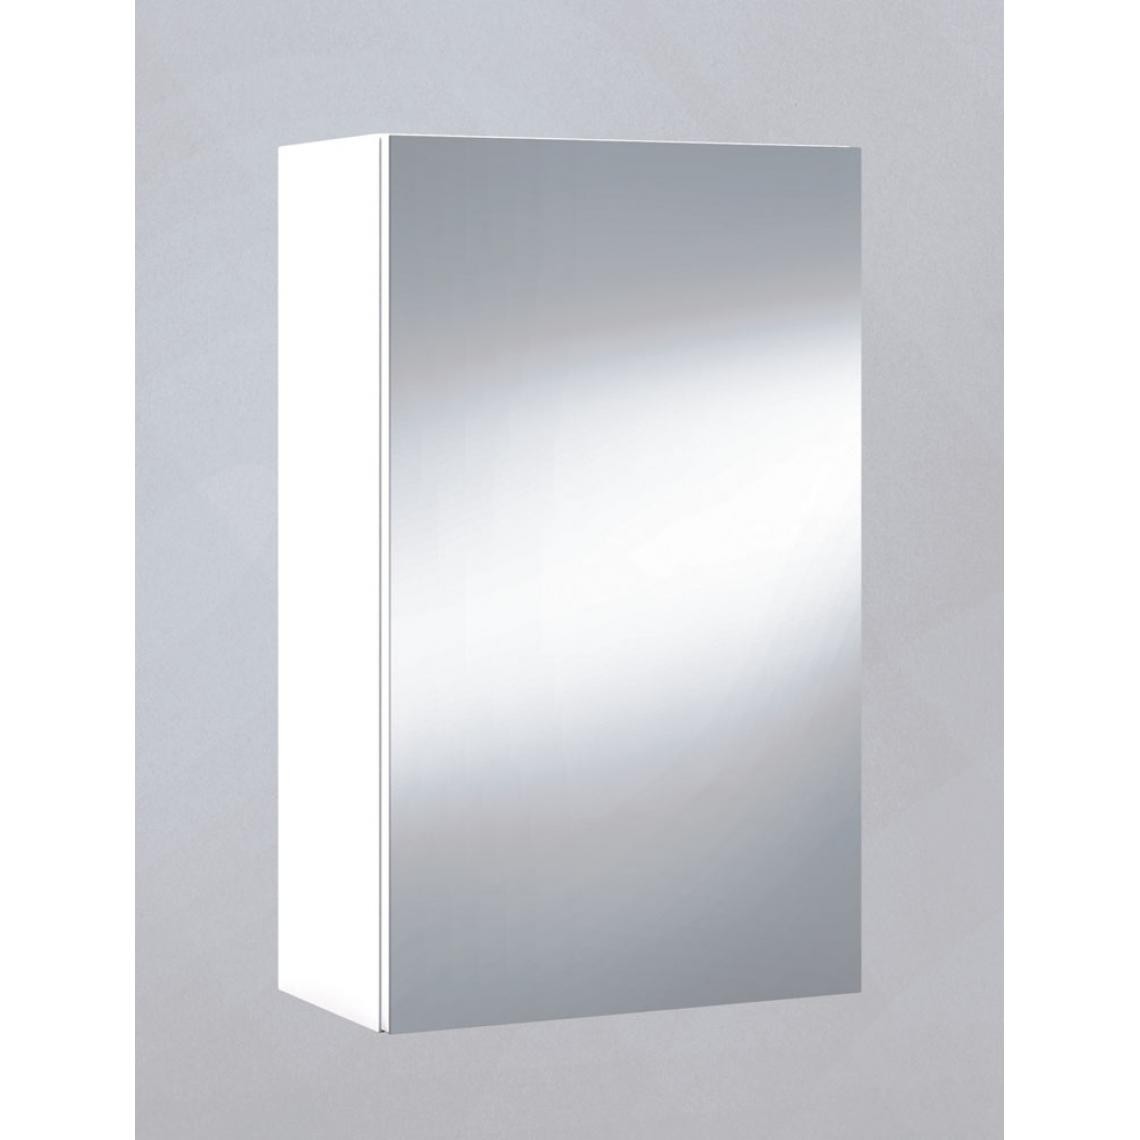 Pegane - Miroir de salle de bain avec rangements 1 porte en blanc brillant, 65 x 40 x 21 cm - Miroir de salle de bain